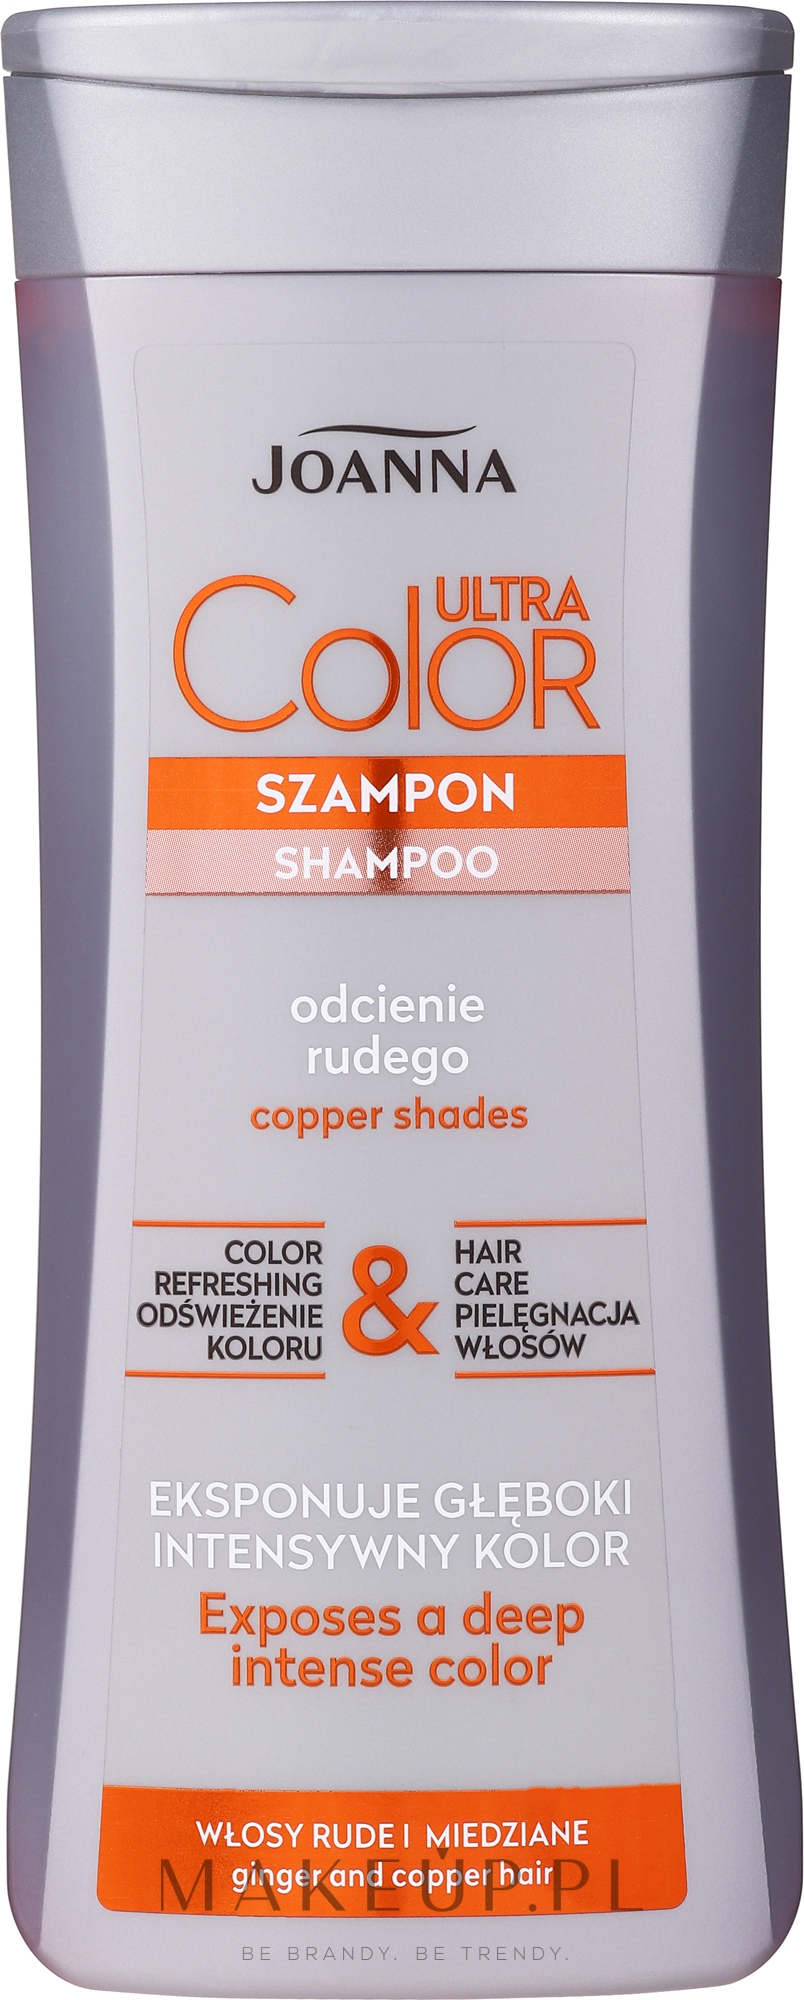 szampon joanna do rudych włosów